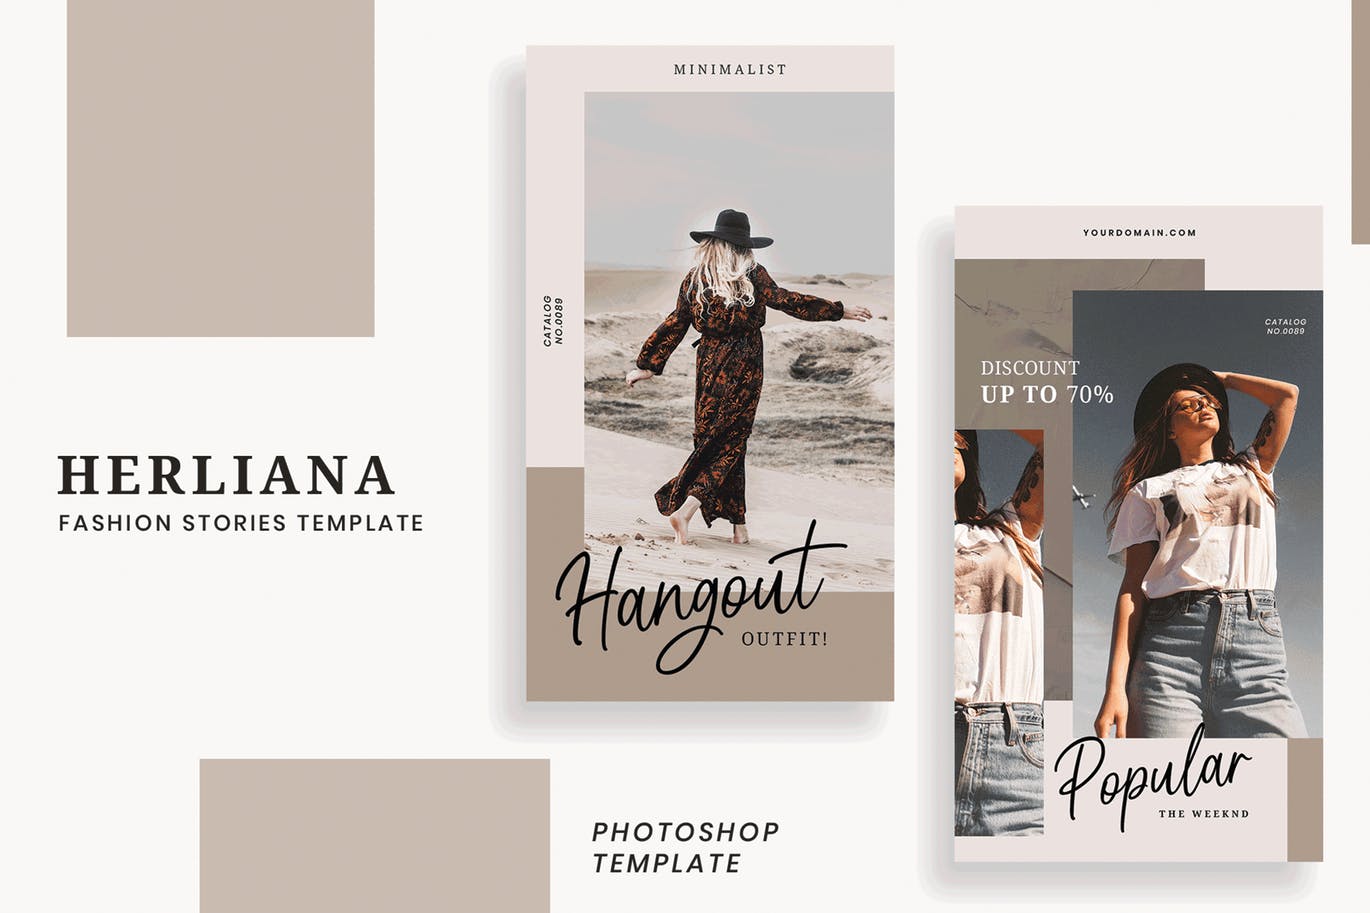 简约风格Instagram社交媒体设计广告图设计模板第一素材精选 Herliana Instagram Story Template插图